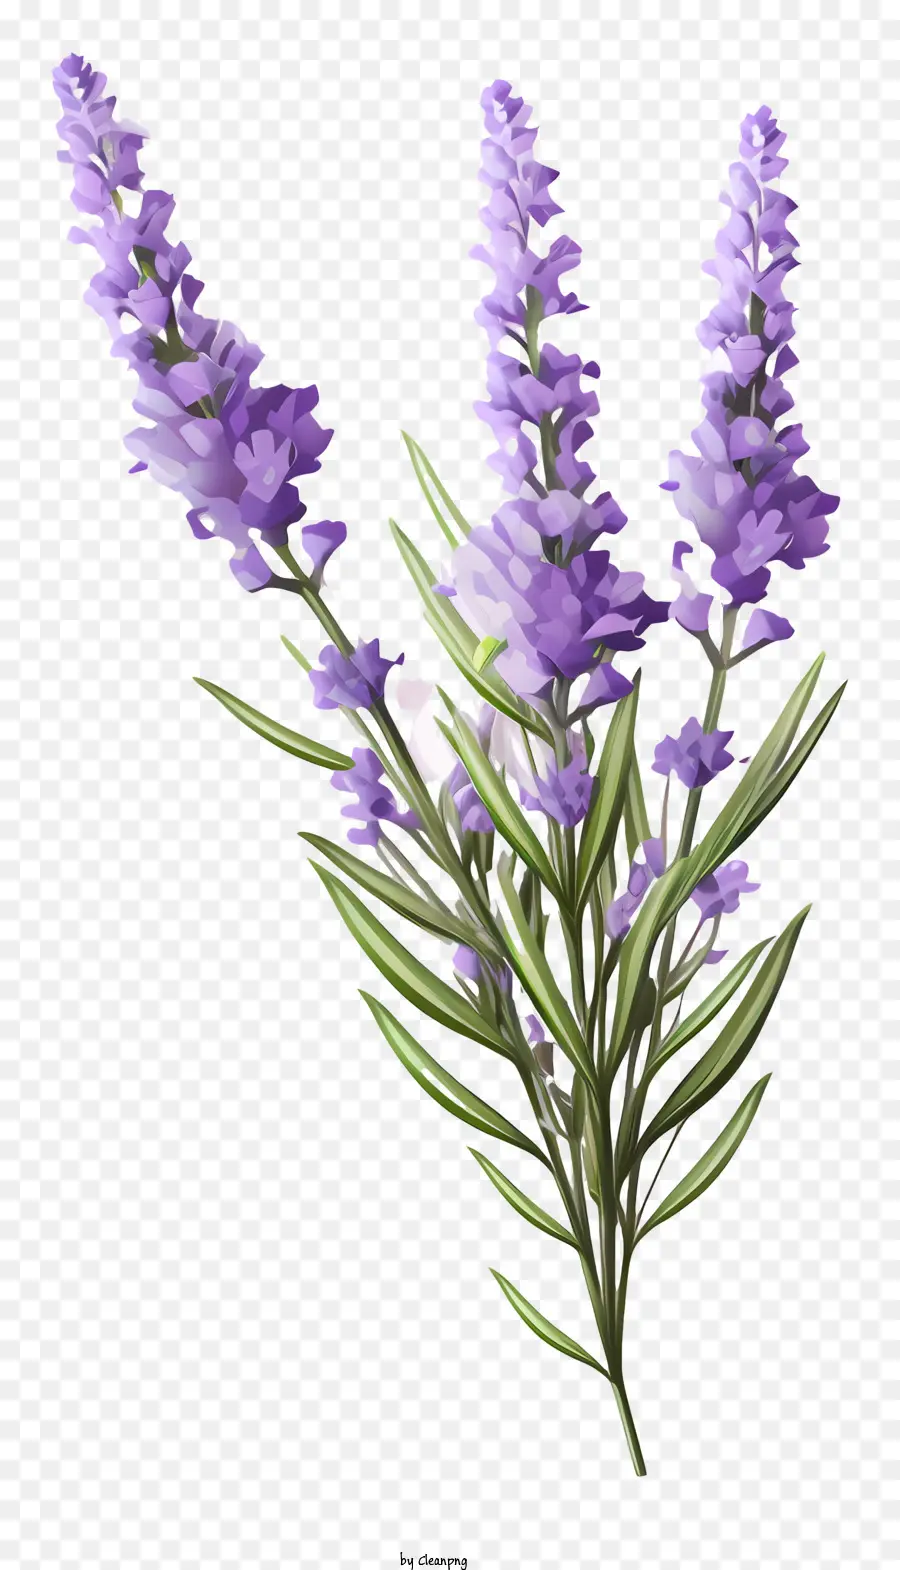 Lavendelblüten lila Blüten lange Stängel schlanke Stiele kleine grüne Blätter - Lila Lavendelblüten mit grünen Blättern, schwarzer Hintergrund